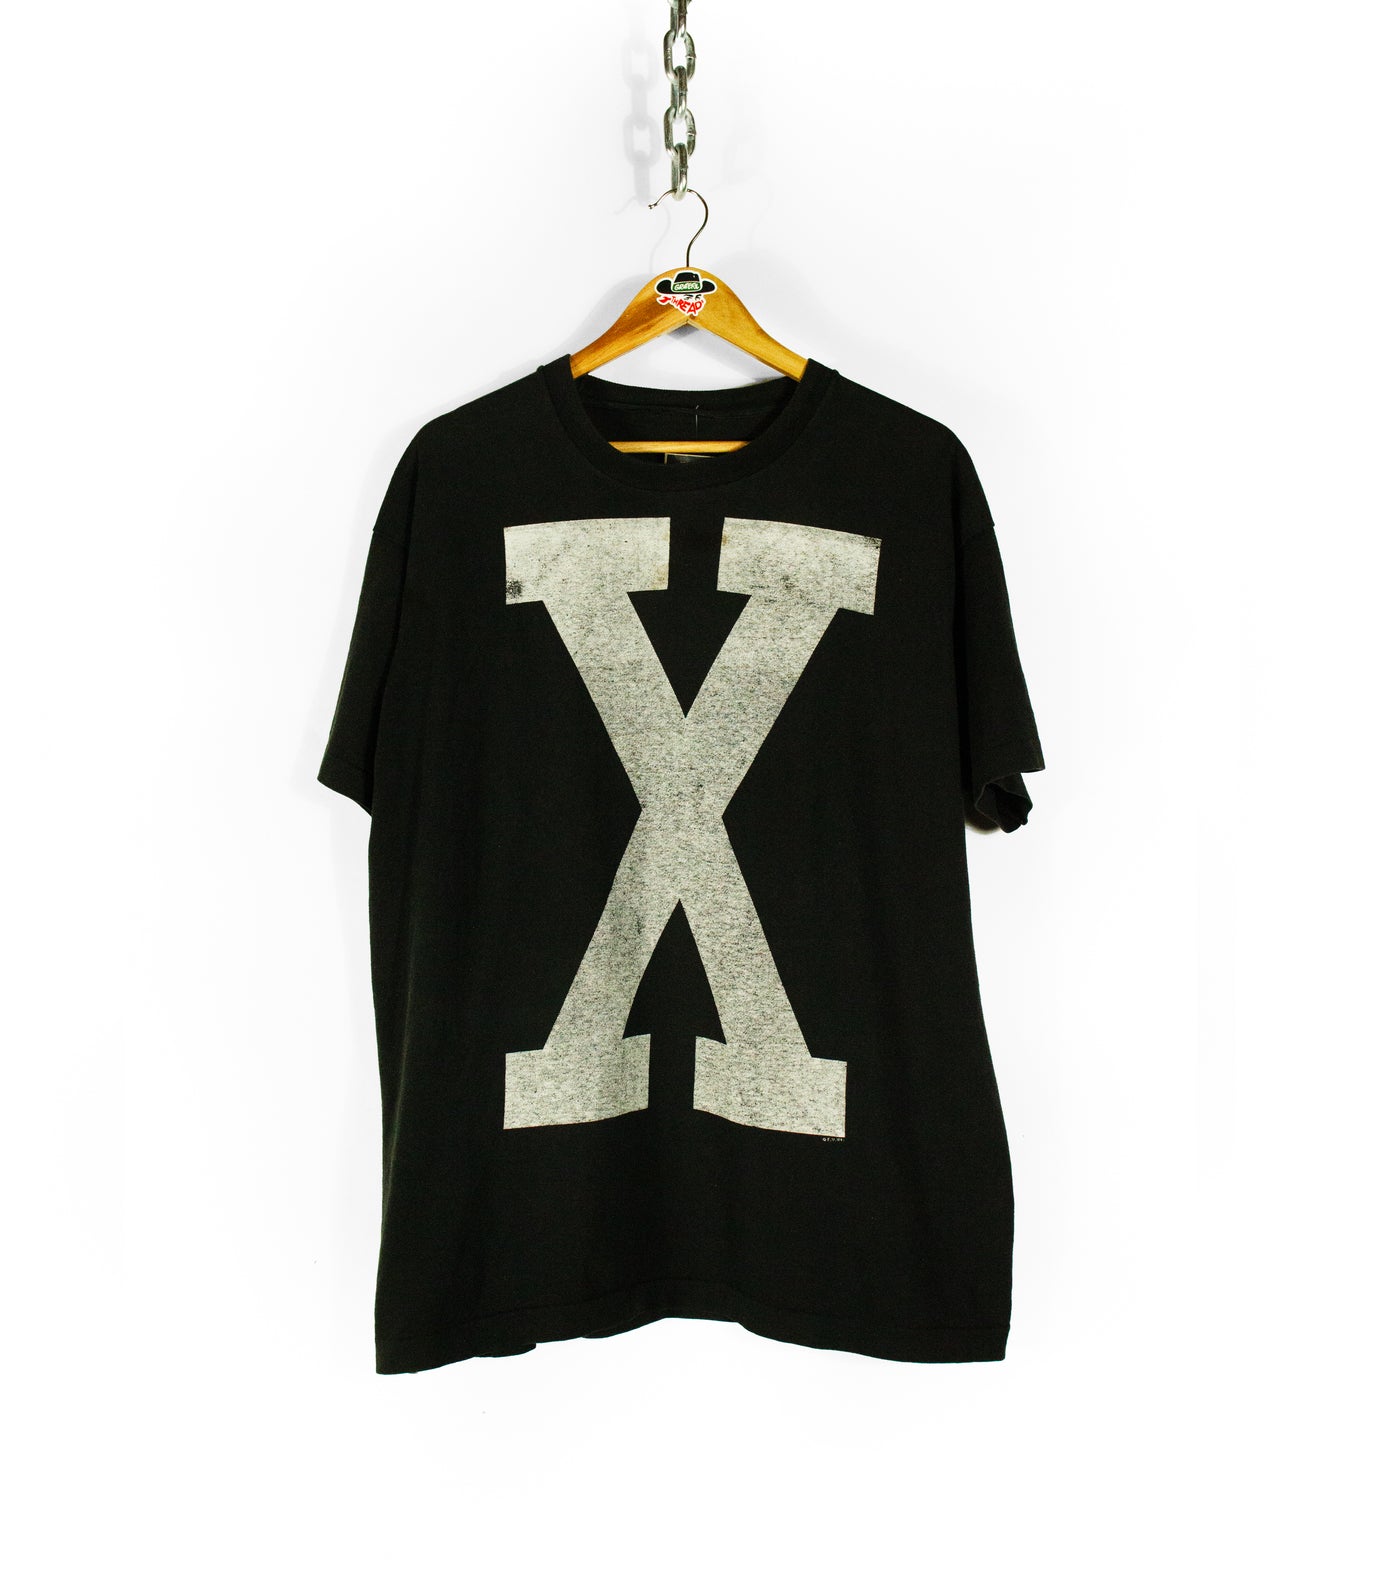 Vintage 1997 Malcolm X 'Big X' T-Shirt